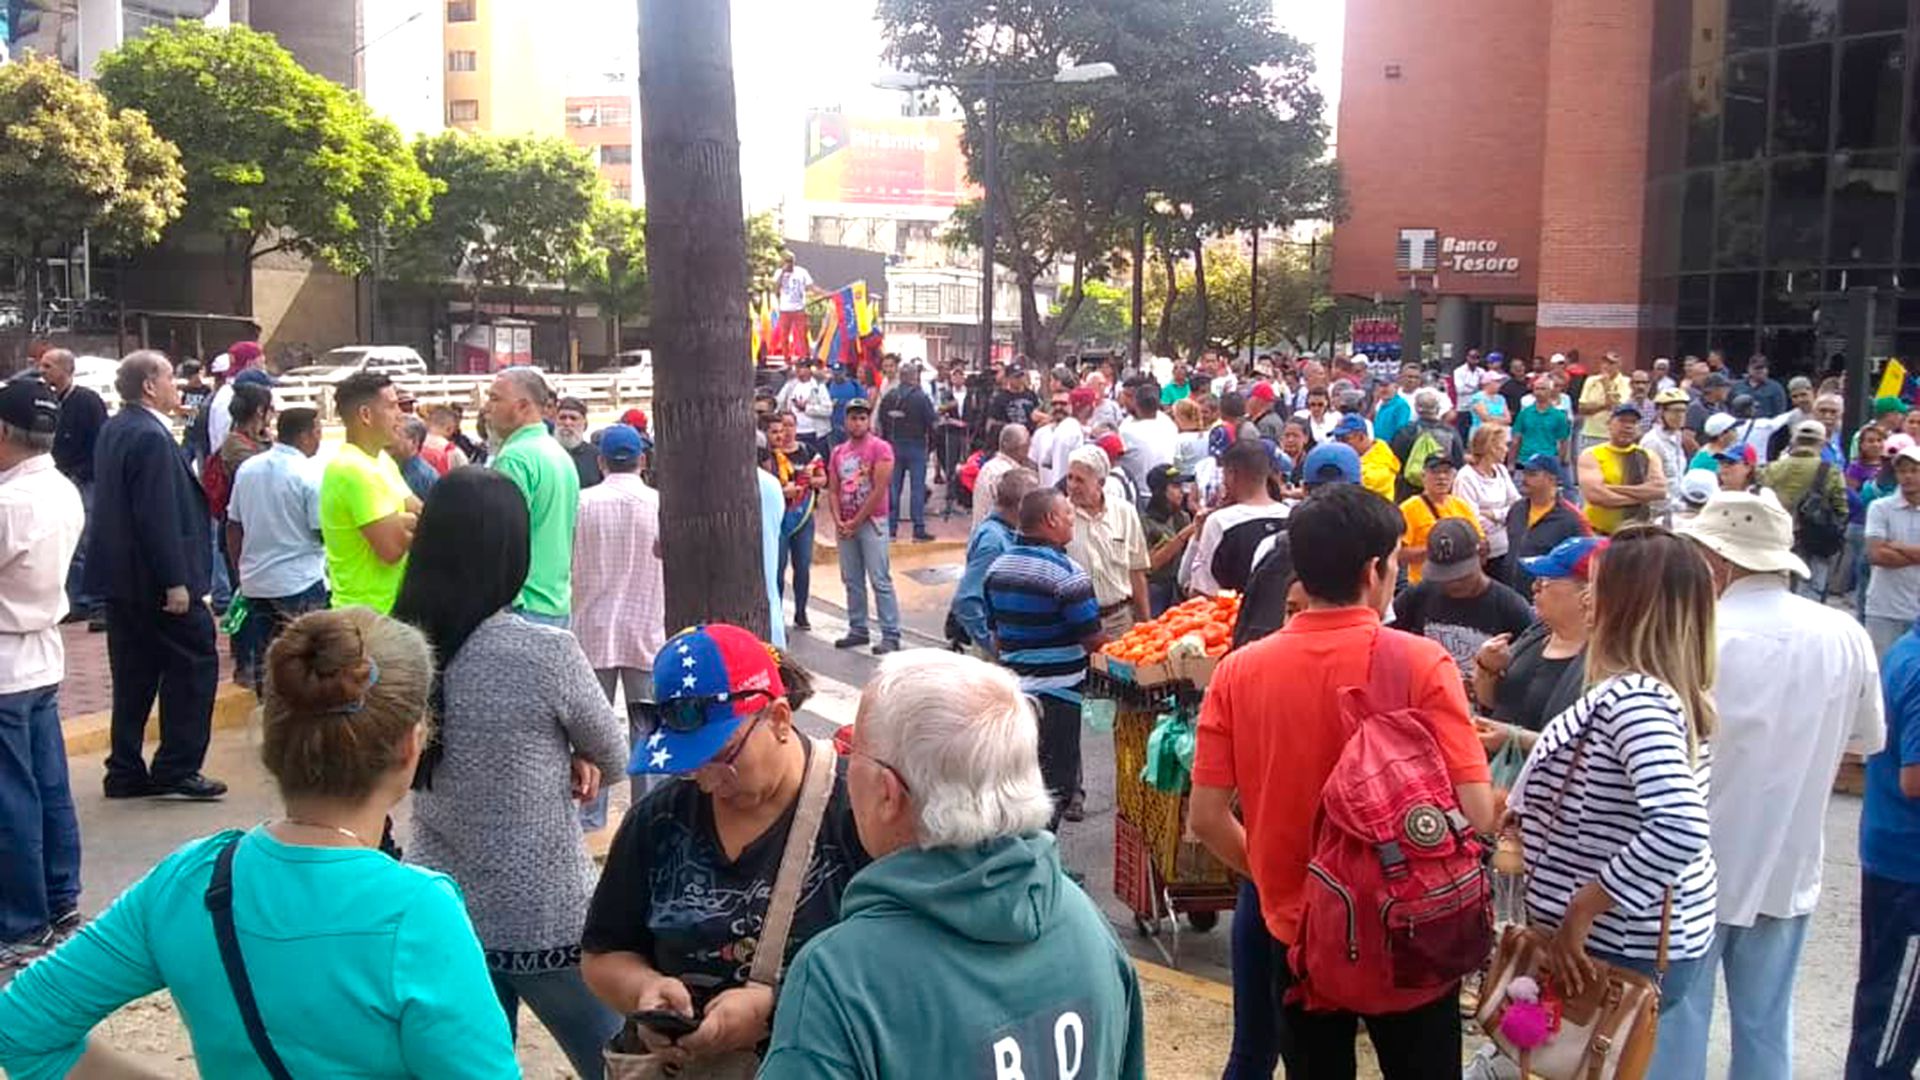 Los manifestantes apoyan el pliego nacional de conflicto, propuesto por Guaidó